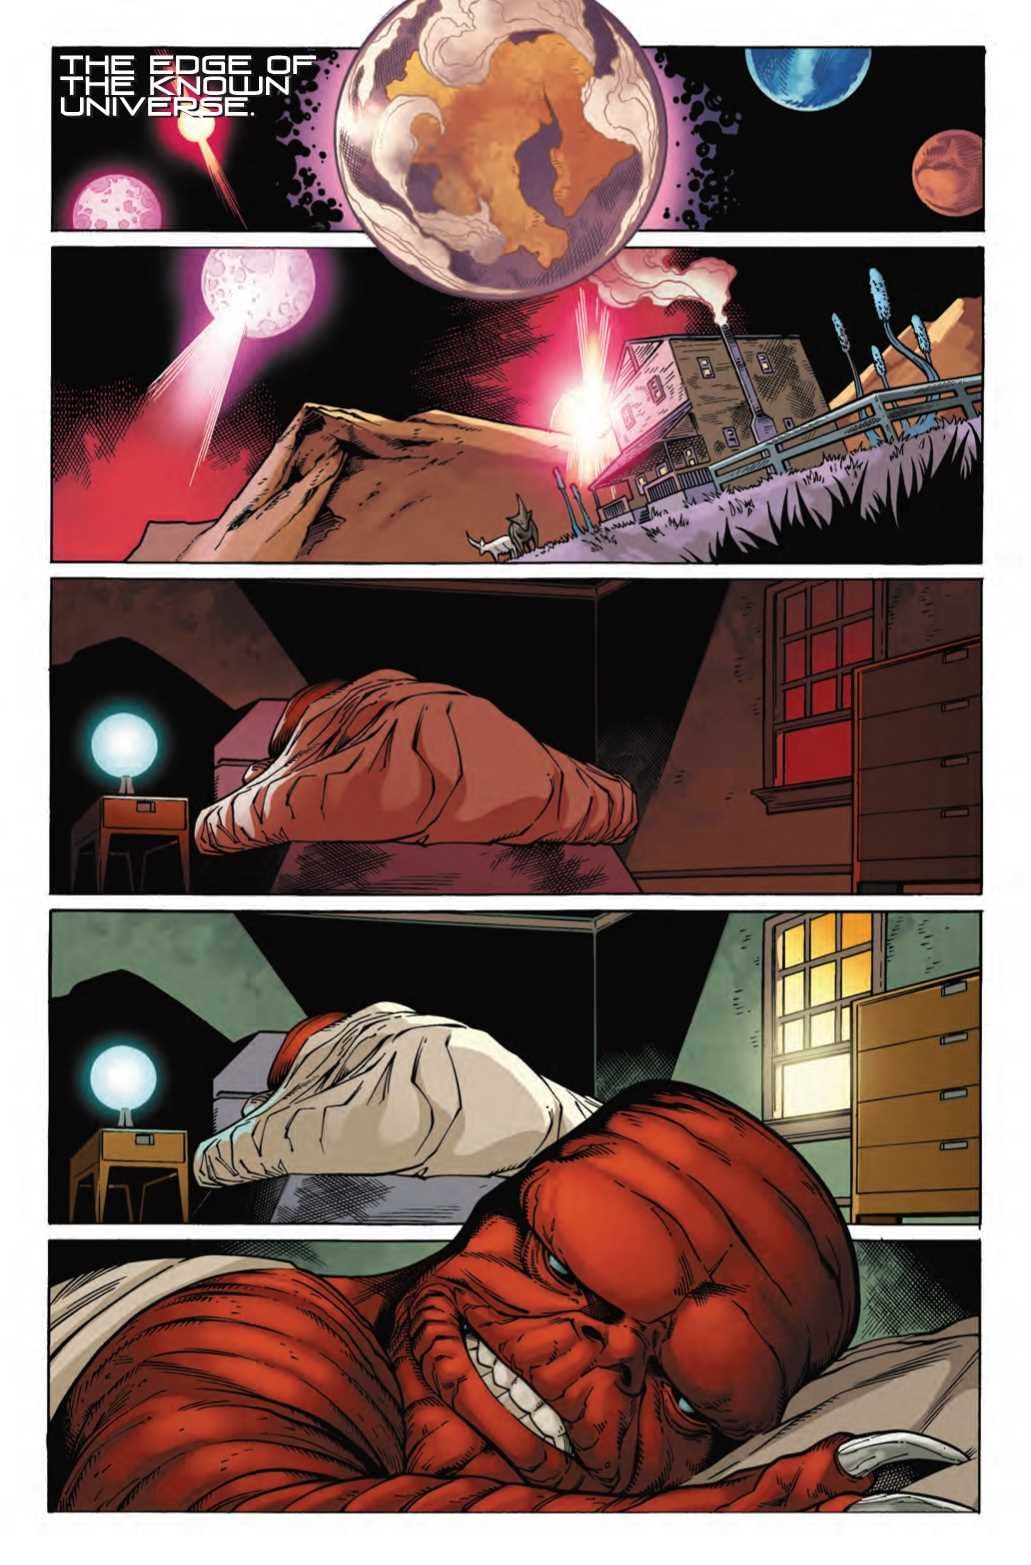 What About Blastaar? in Next Week's Spider-Man/Deadpool #44